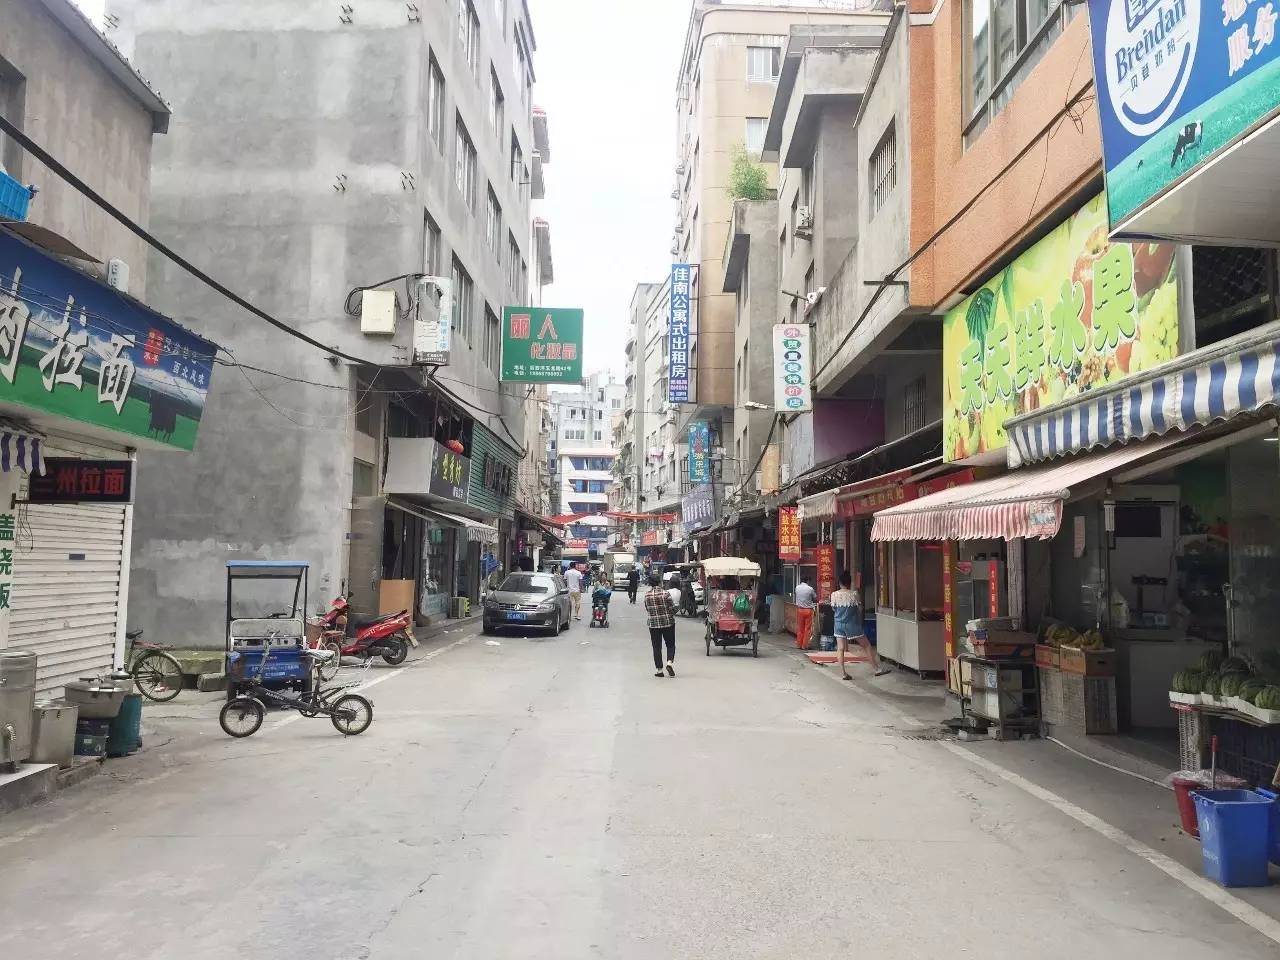 5月15日10时许,柳市镇柳翁西路与柳青北路交叉口,两辆大吊车相距约50